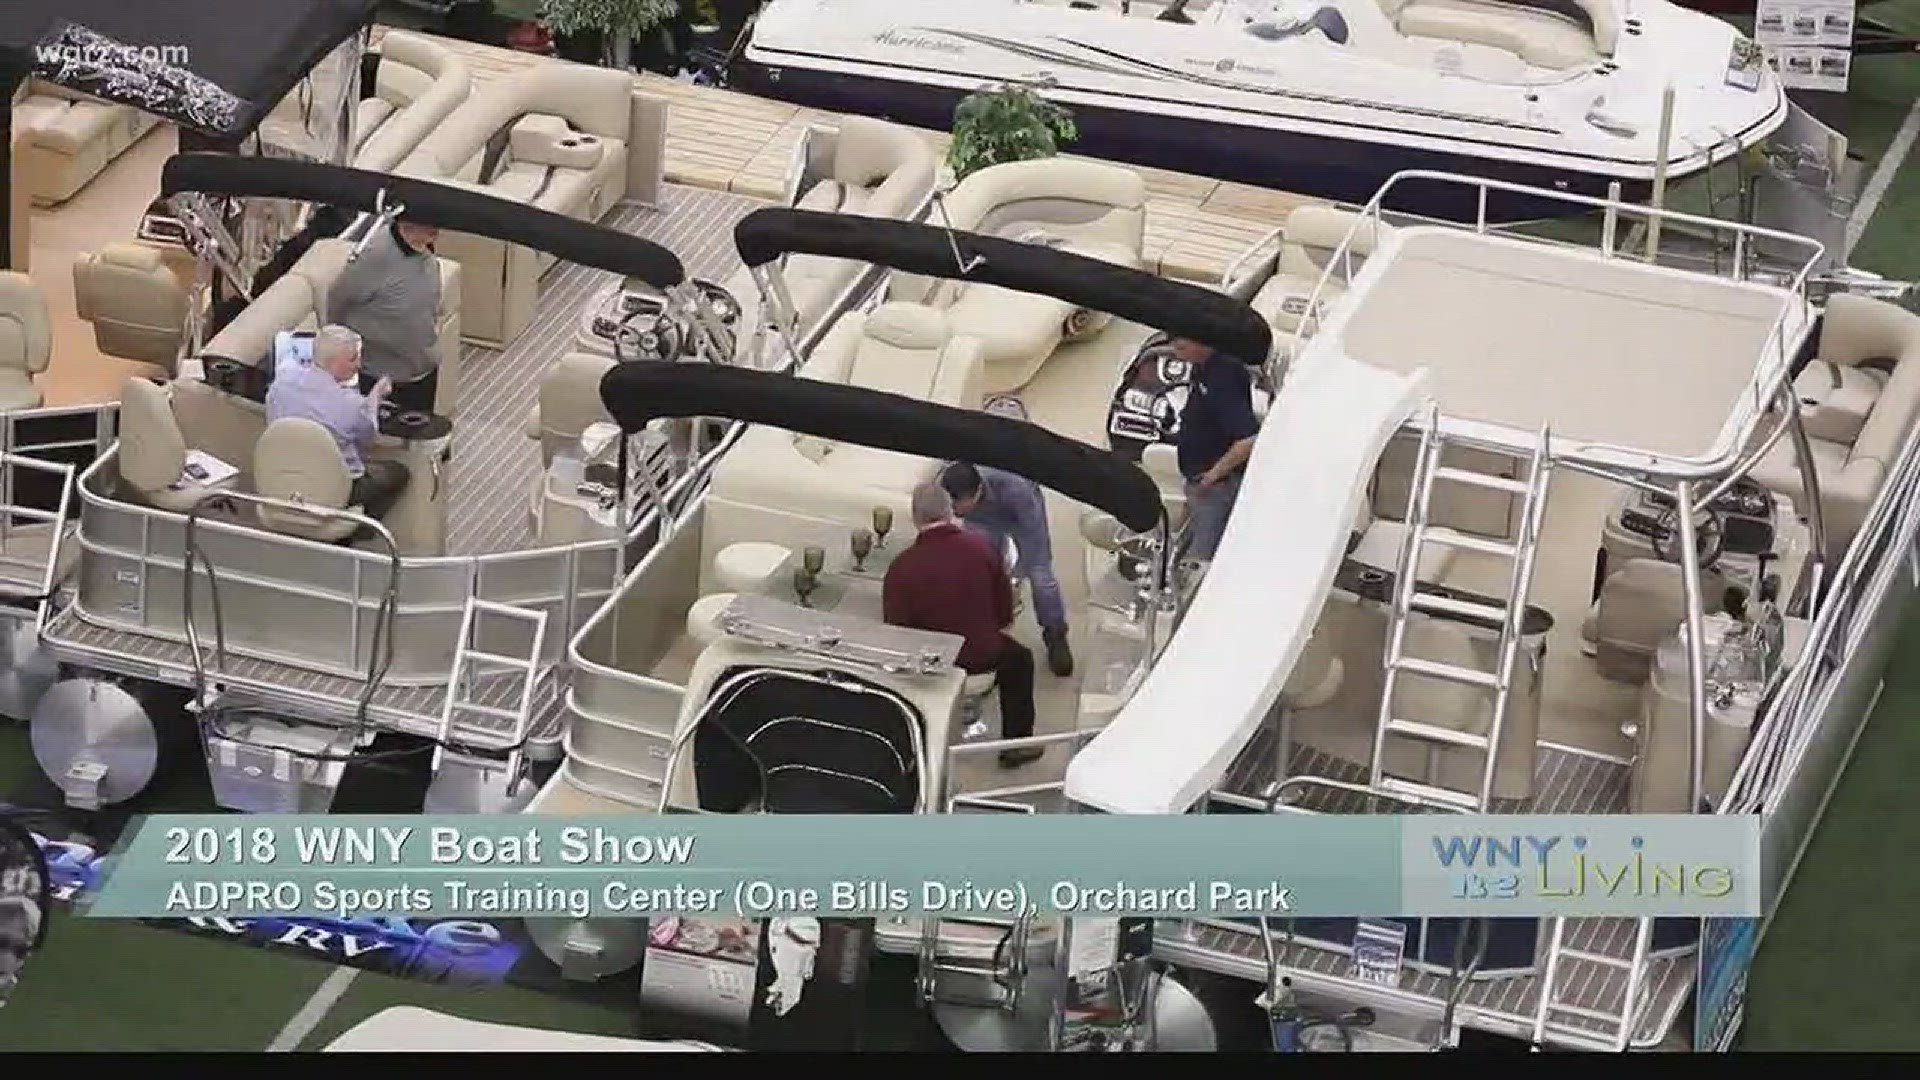 WNY Living - February 17 - WNY Boat Show